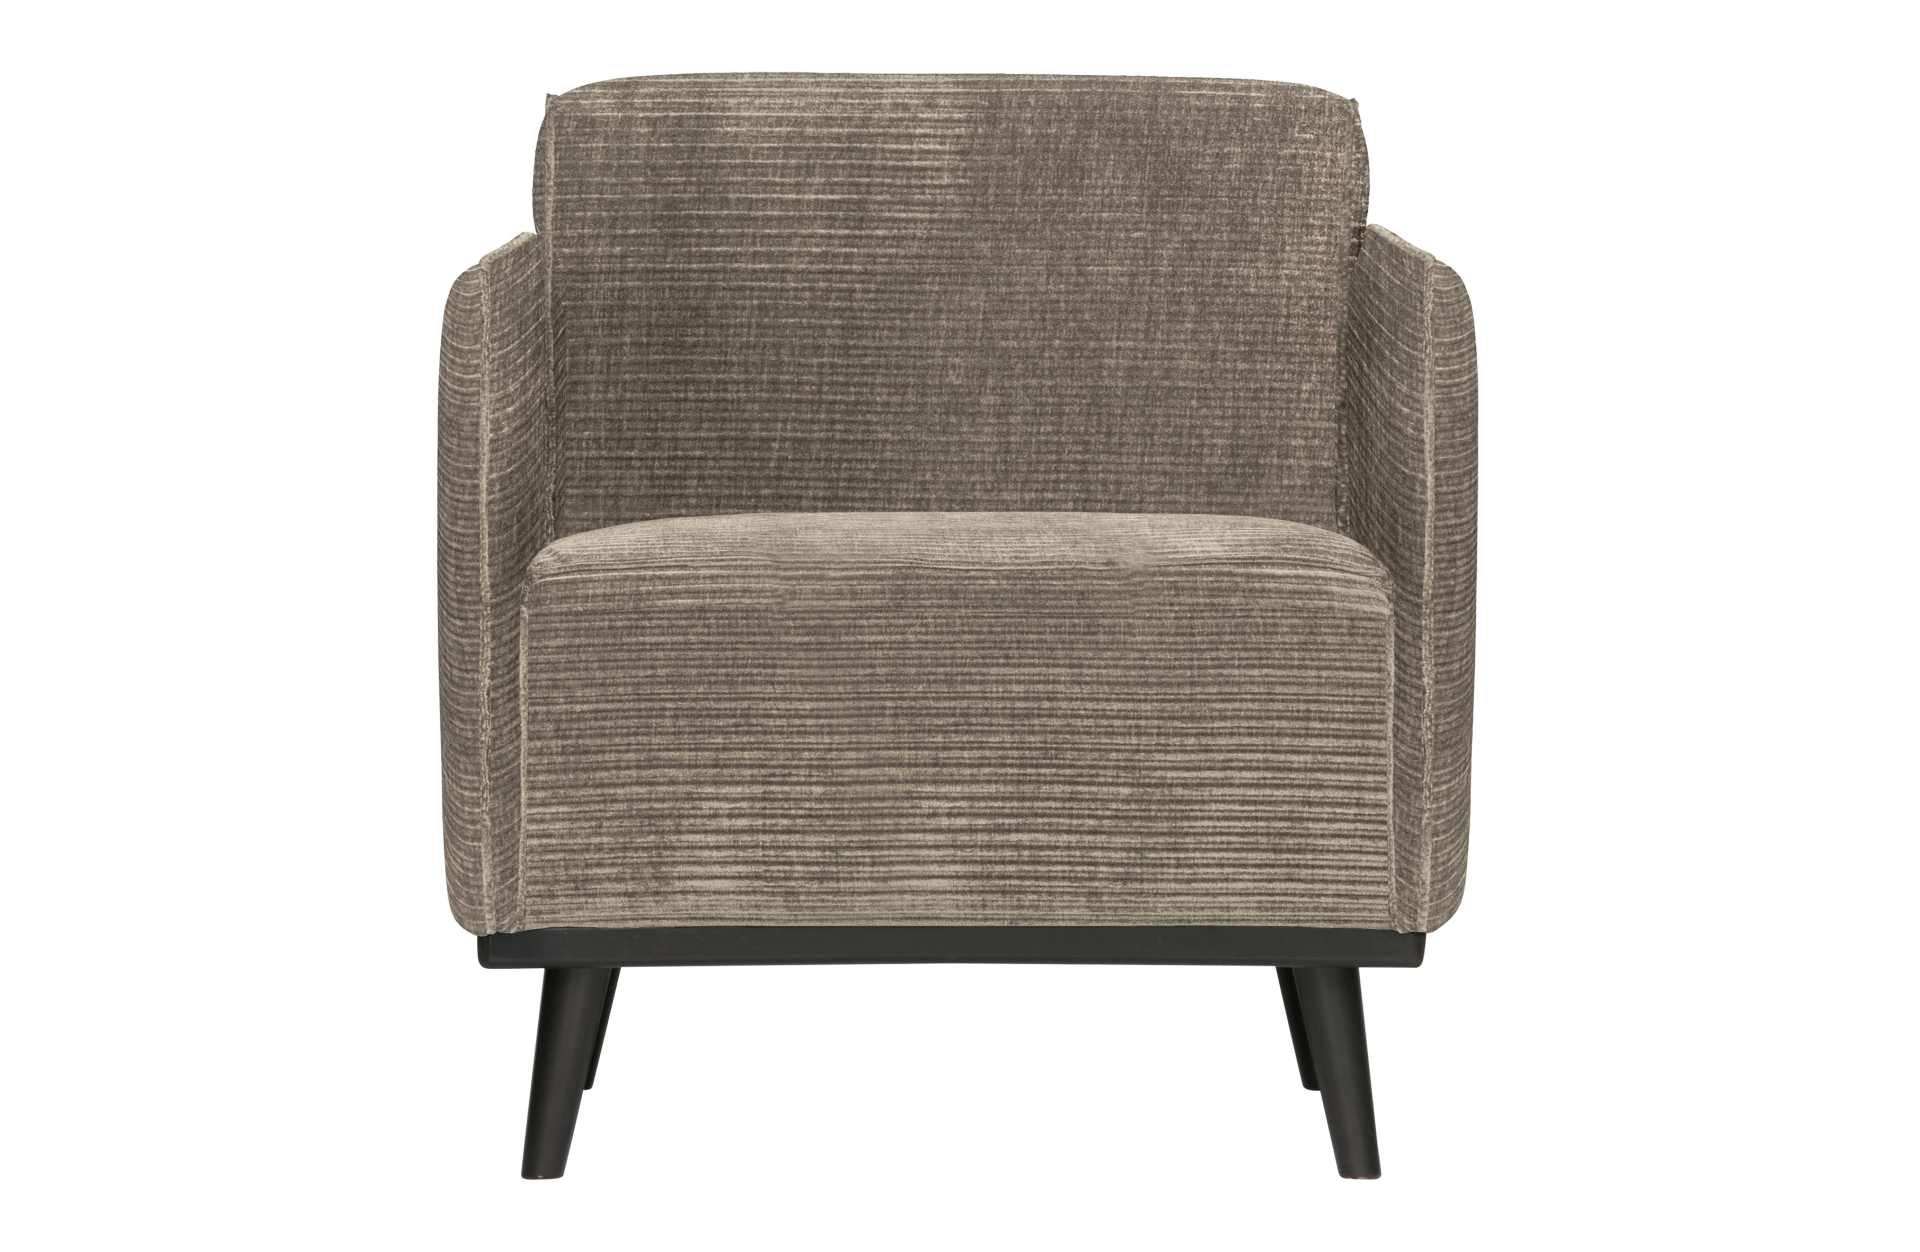 Der Sessel Statement überzeugt mit seinem modernen Design. Gefertigt wurde er aus gewebten Jacquard, welches einen Beige Farbton besitzen. Das Gestell ist aus Birkenholz und hat eine schwarze Farbe. Der Hocker hat eine Sitzhöhe von 46 cm.